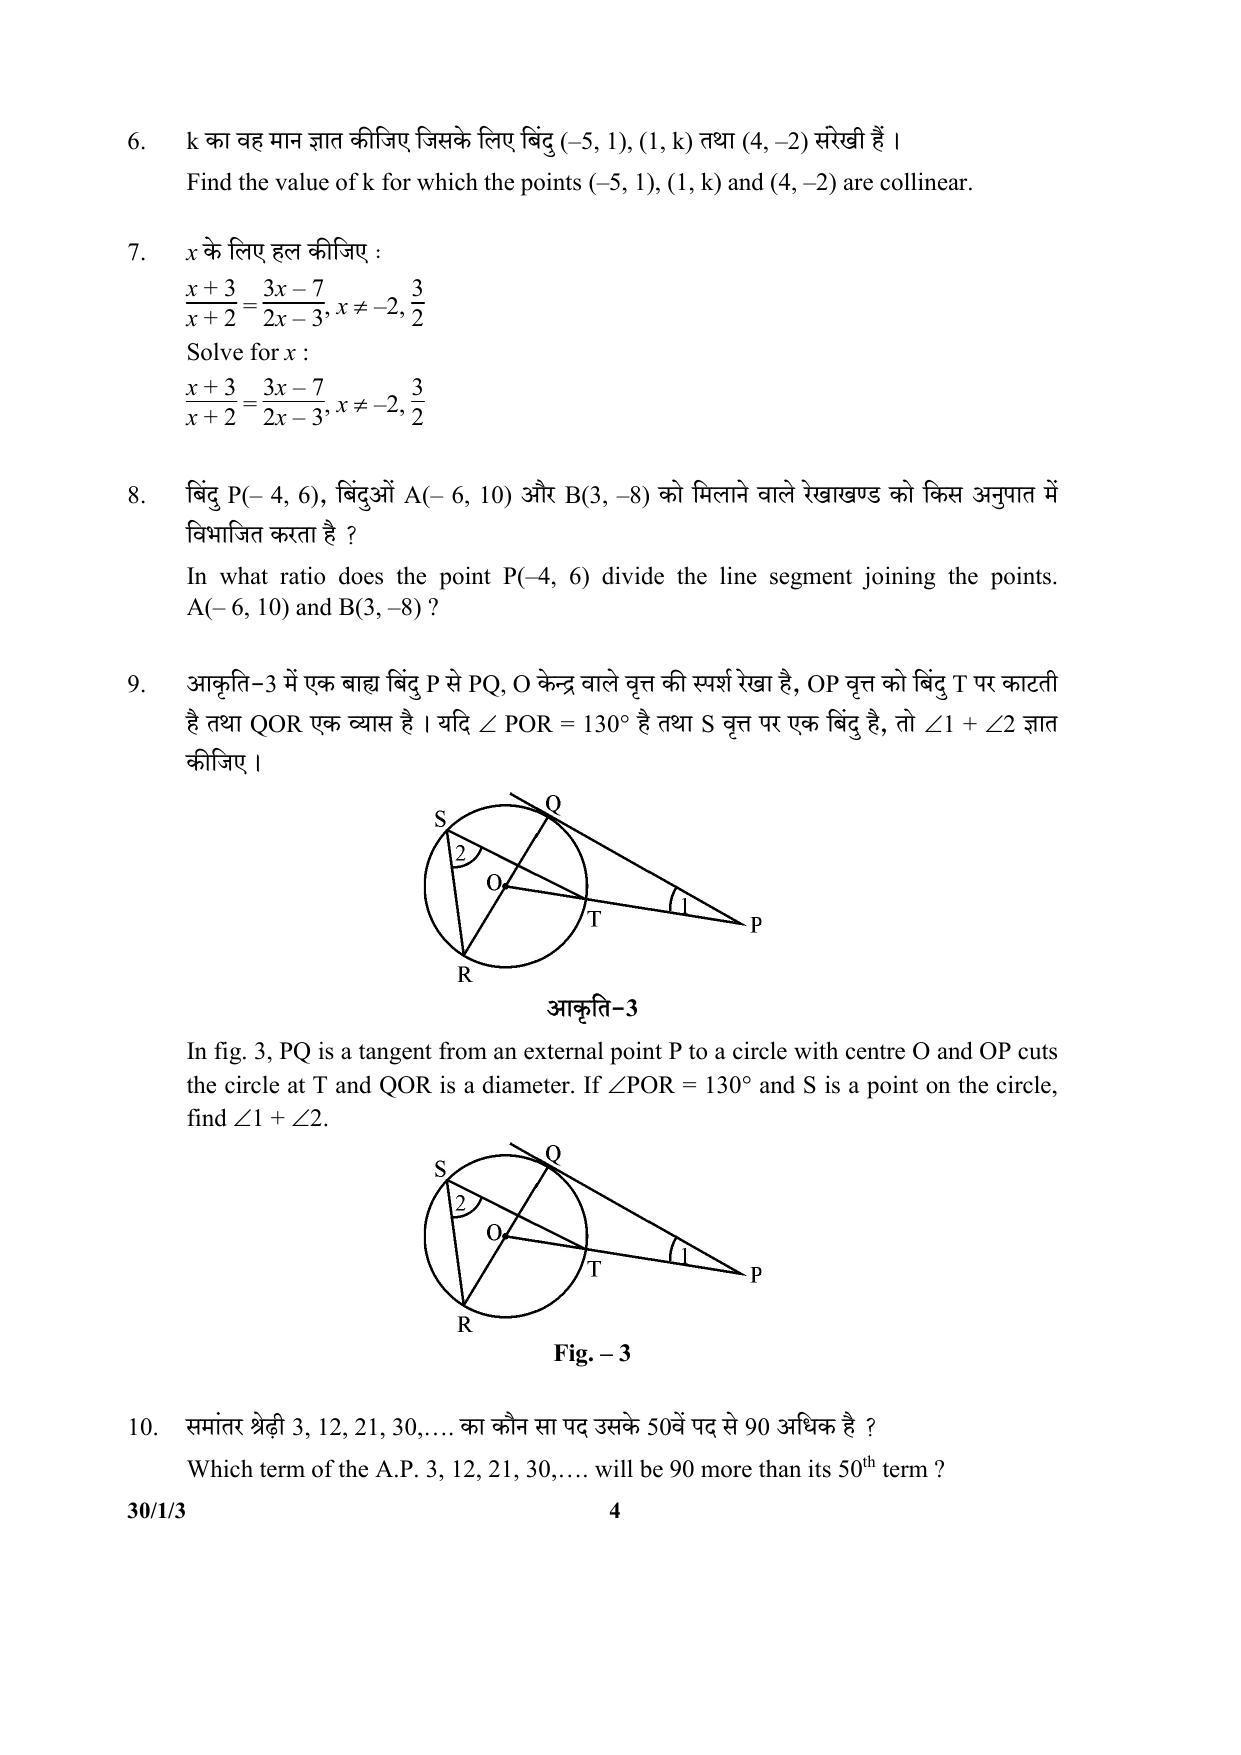 CBSE Class 10 30-1-3 (Mathematics) 2017-comptt Question Paper - Page 4